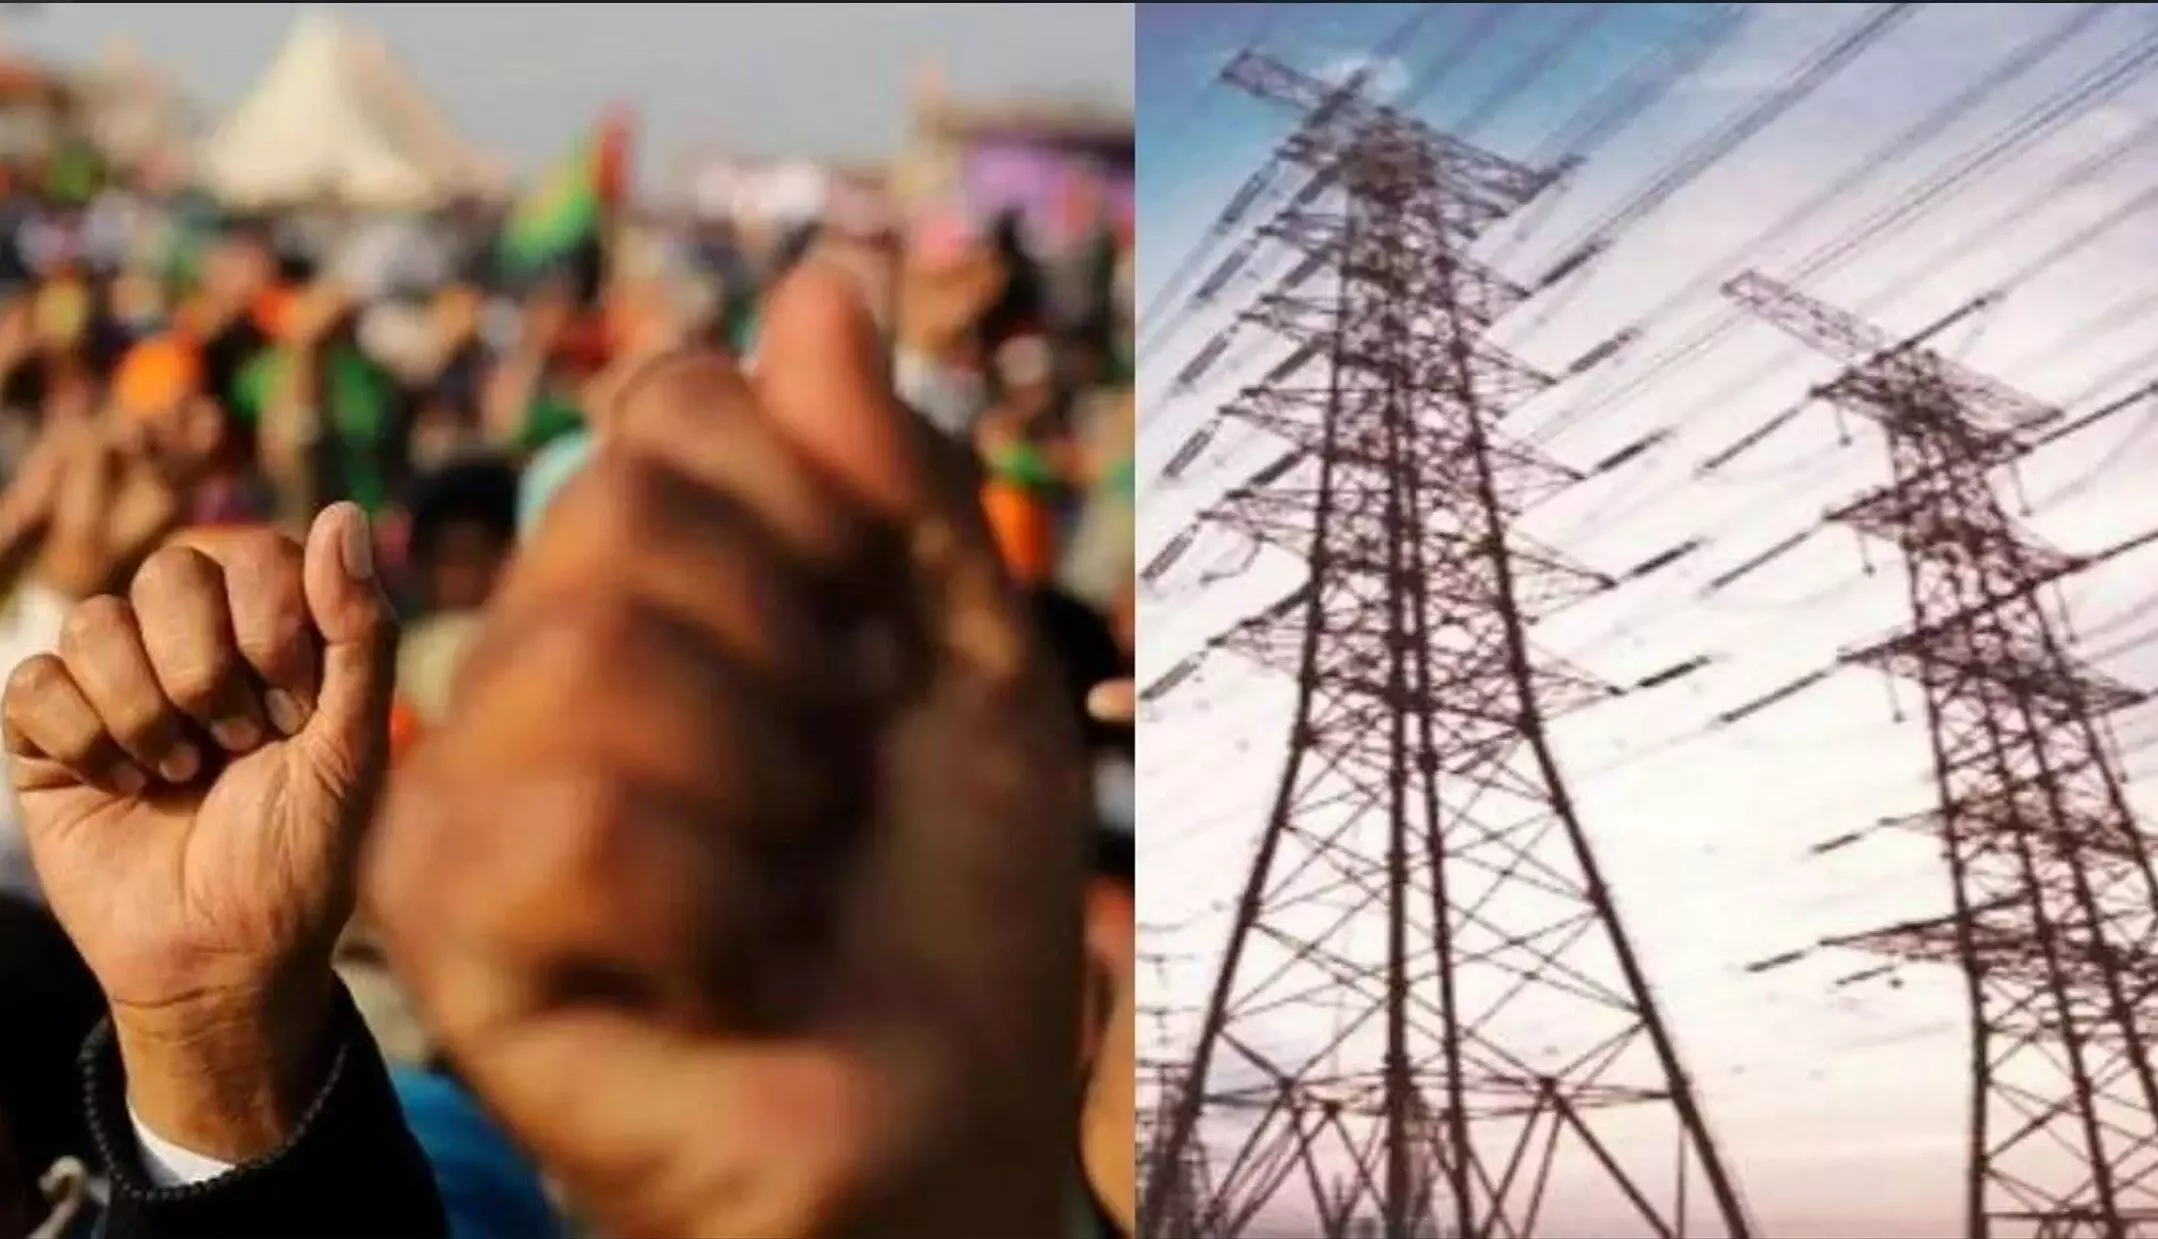 Electricity Strike in UP: यूपी में बिजली कर्मियों की हड़ताल खत्म, किसी की नहीं जाएगी नौकरी, मुकदमें भी होंगे वापस